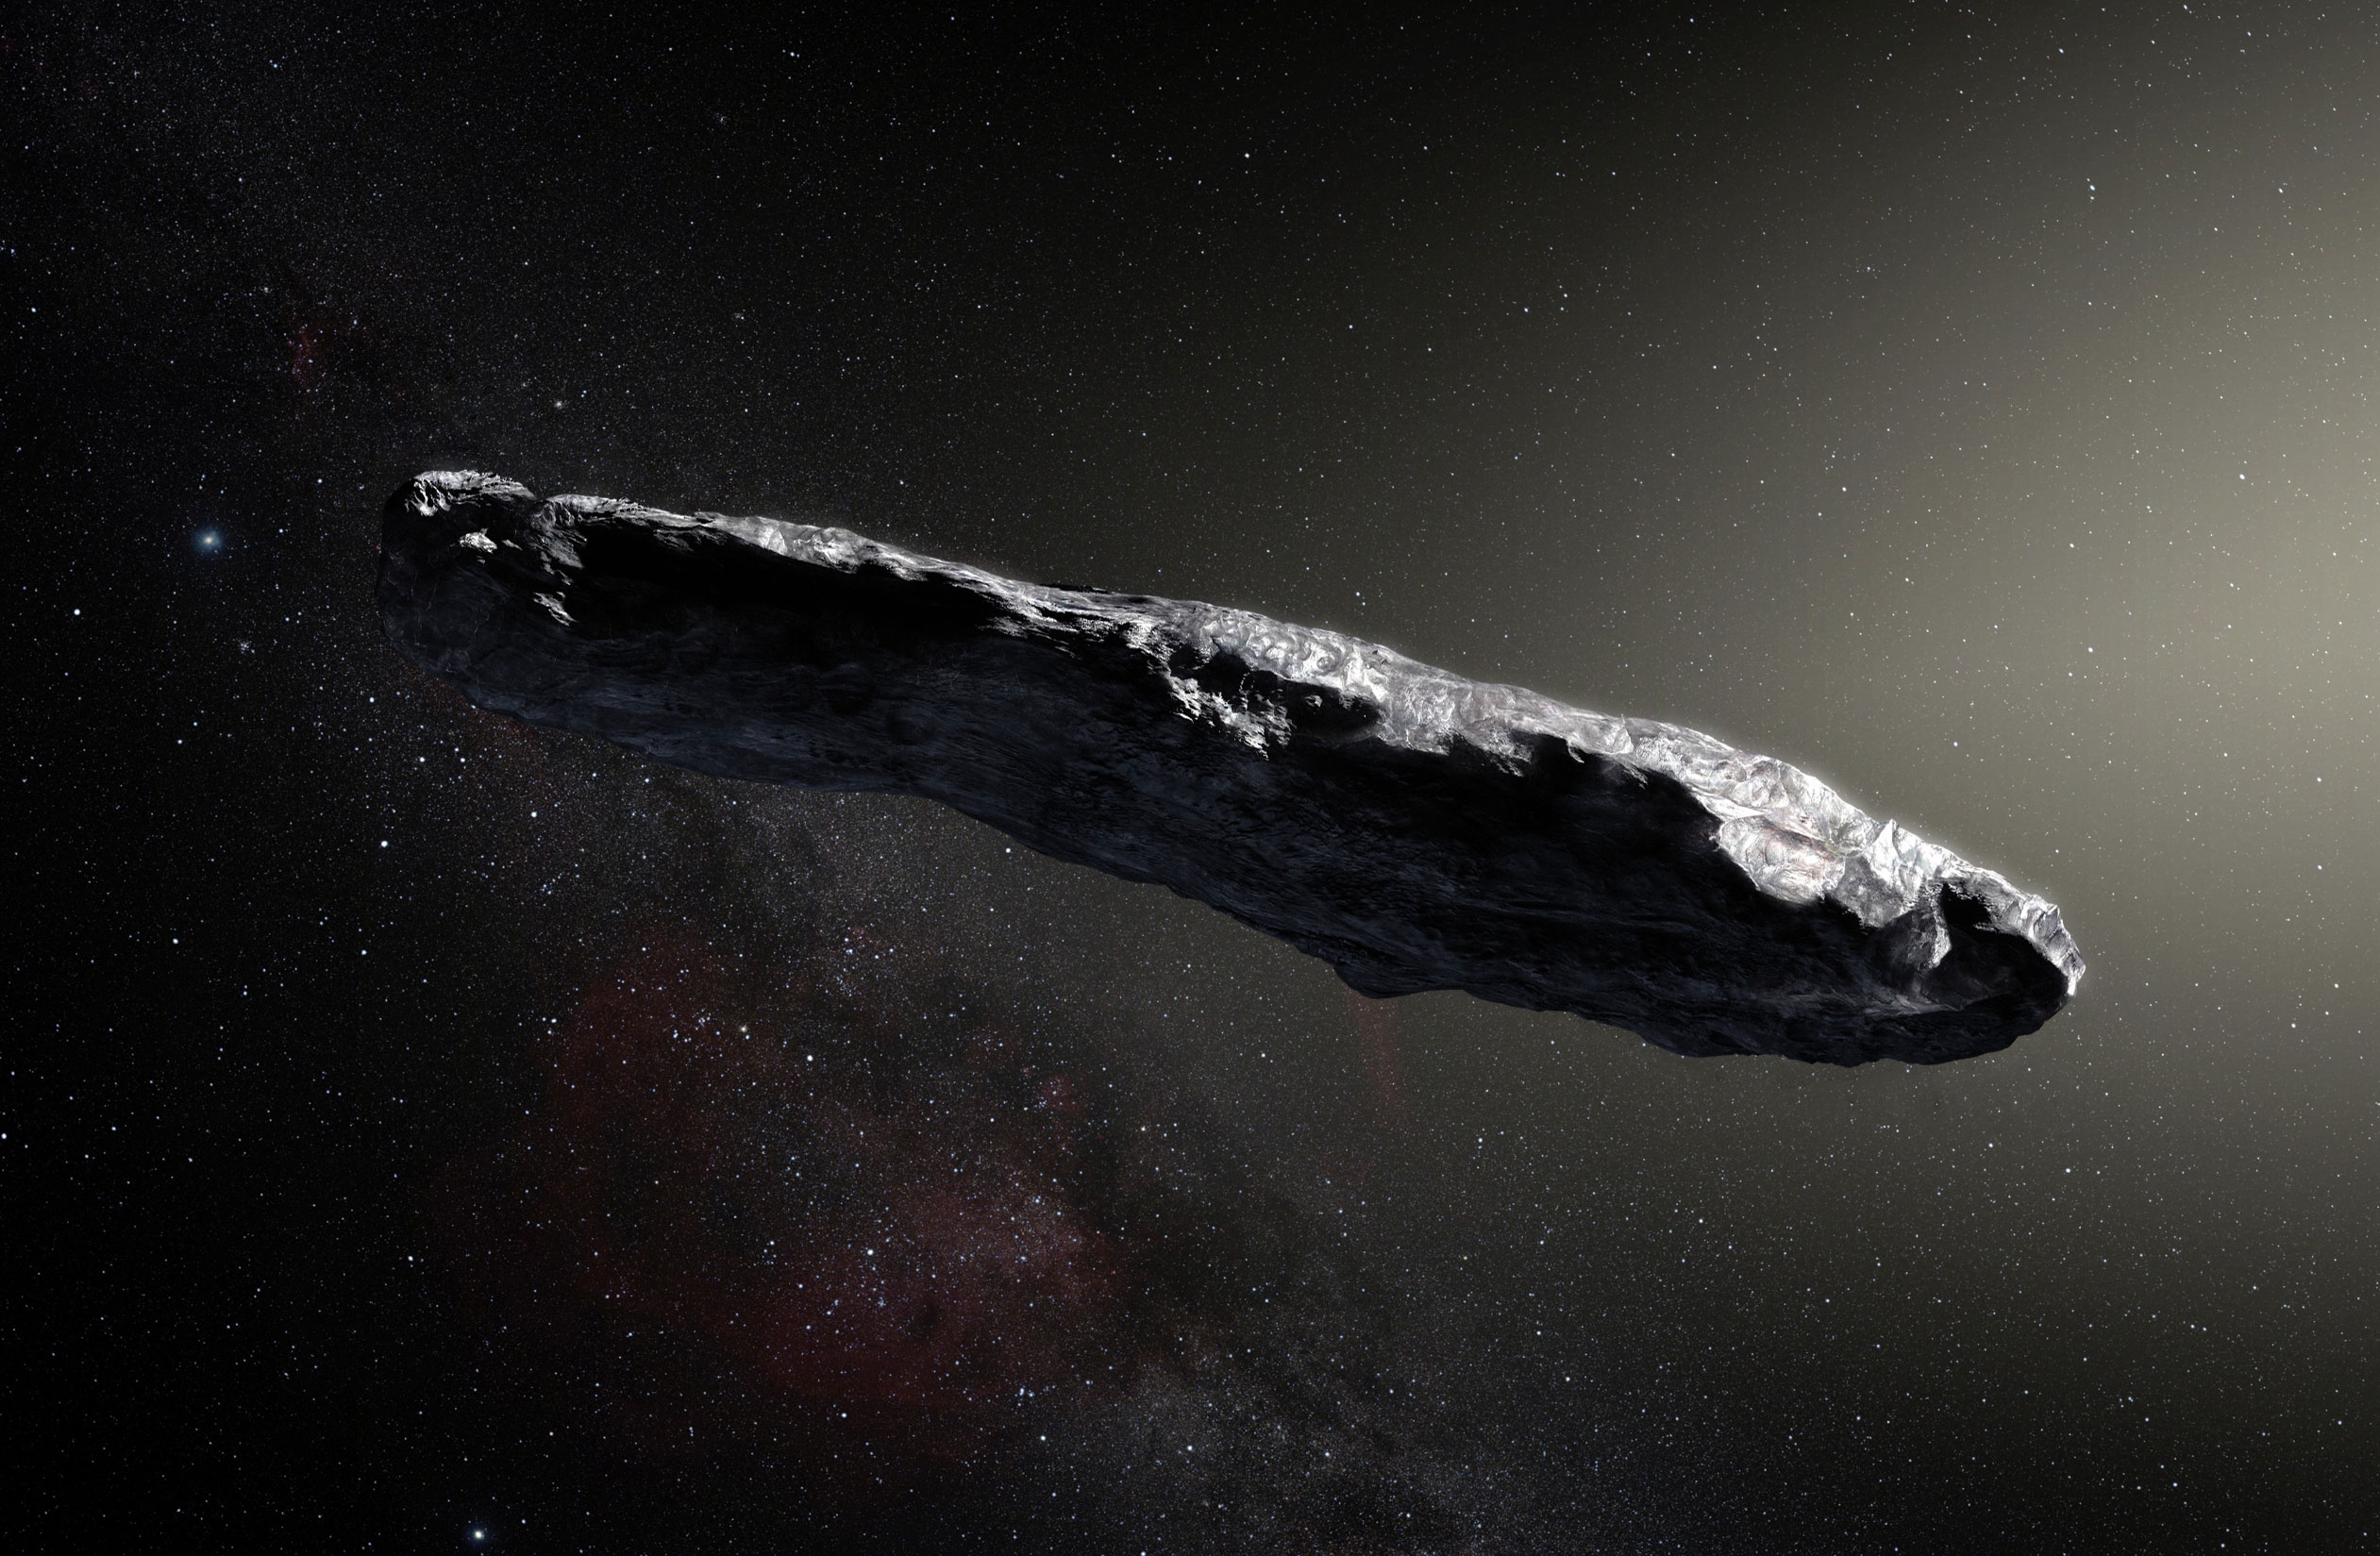 1I/Oumuamua